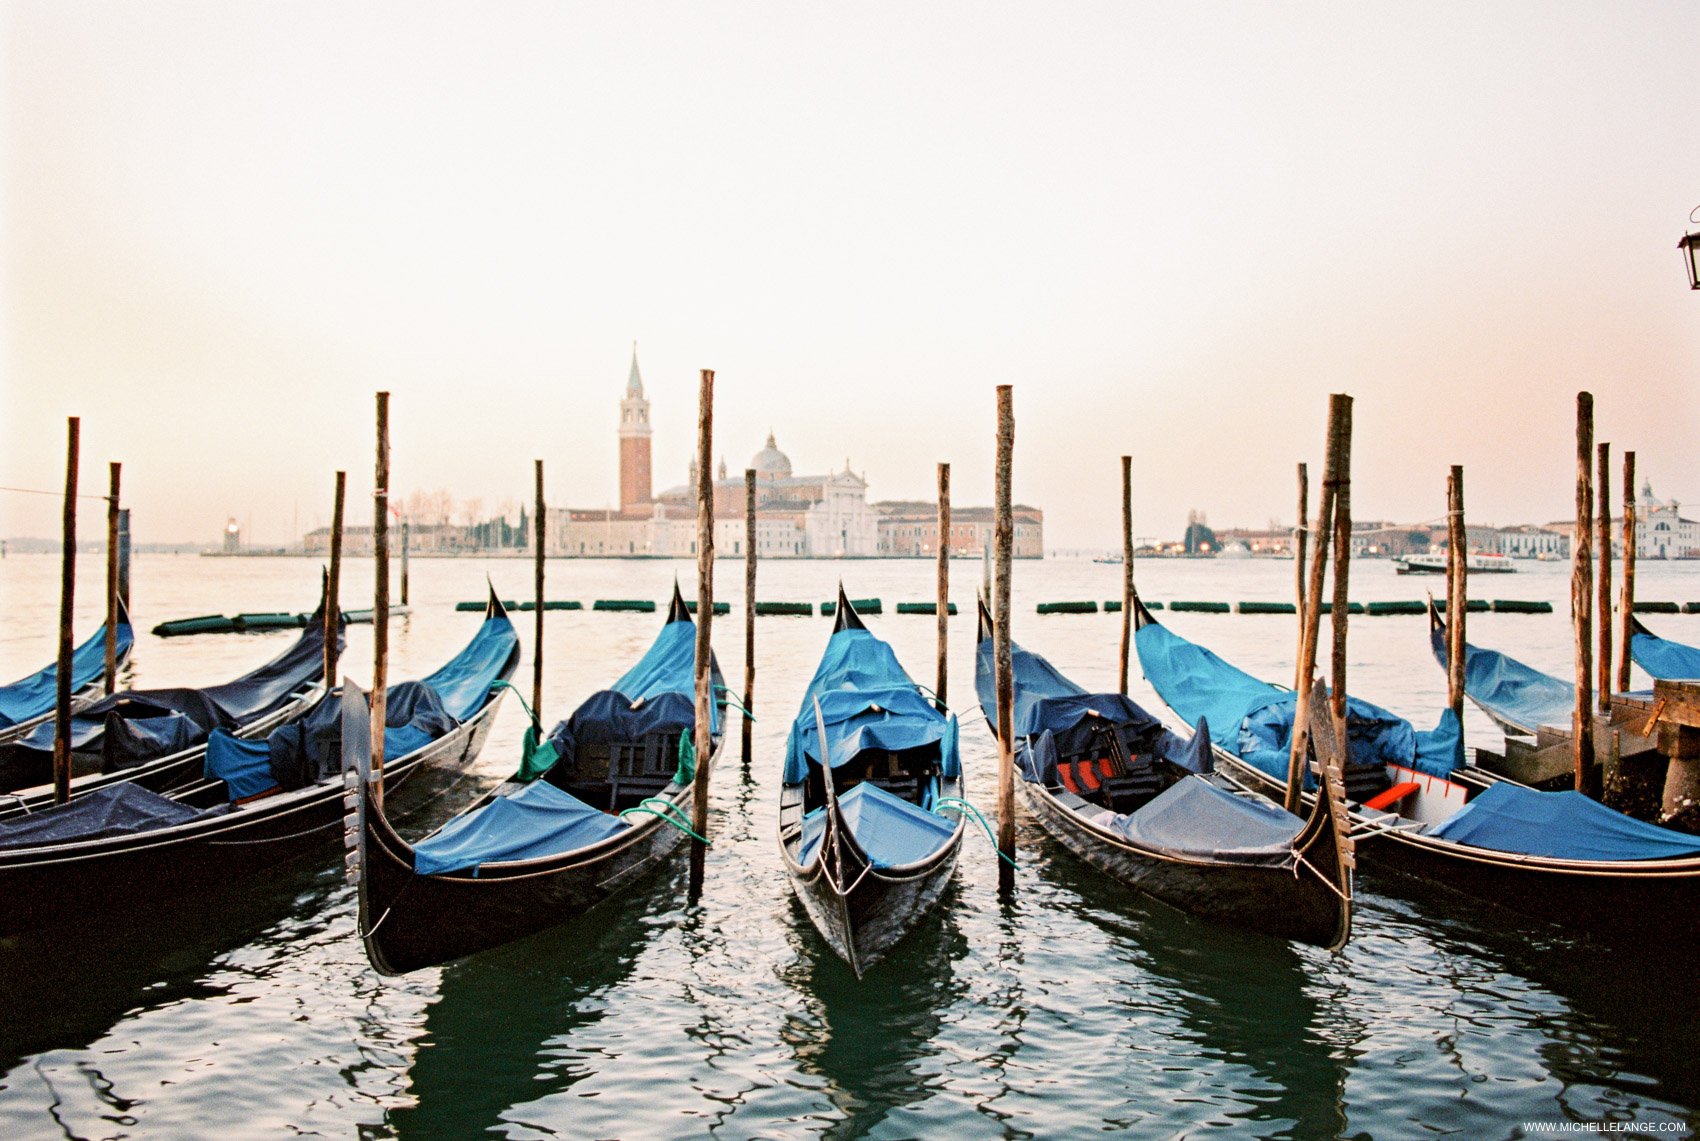 Venice Travel Photography - Early Morning Gondolas